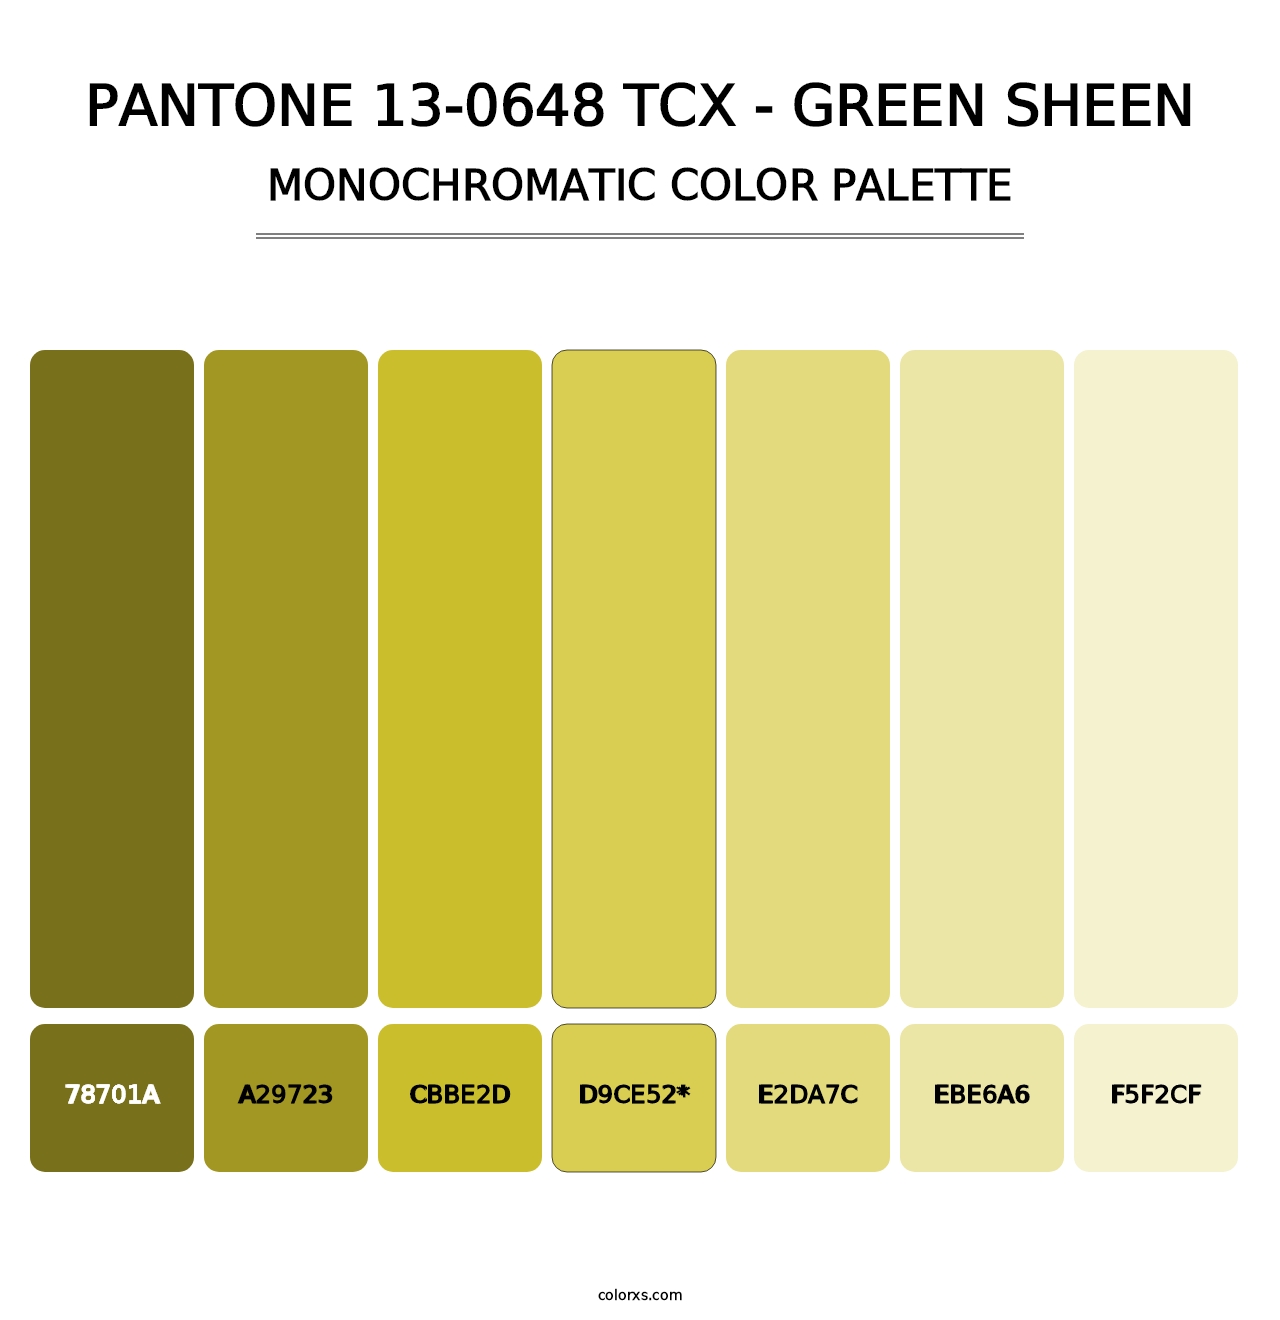 PANTONE 13-0648 TCX - Green Sheen - Monochromatic Color Palette